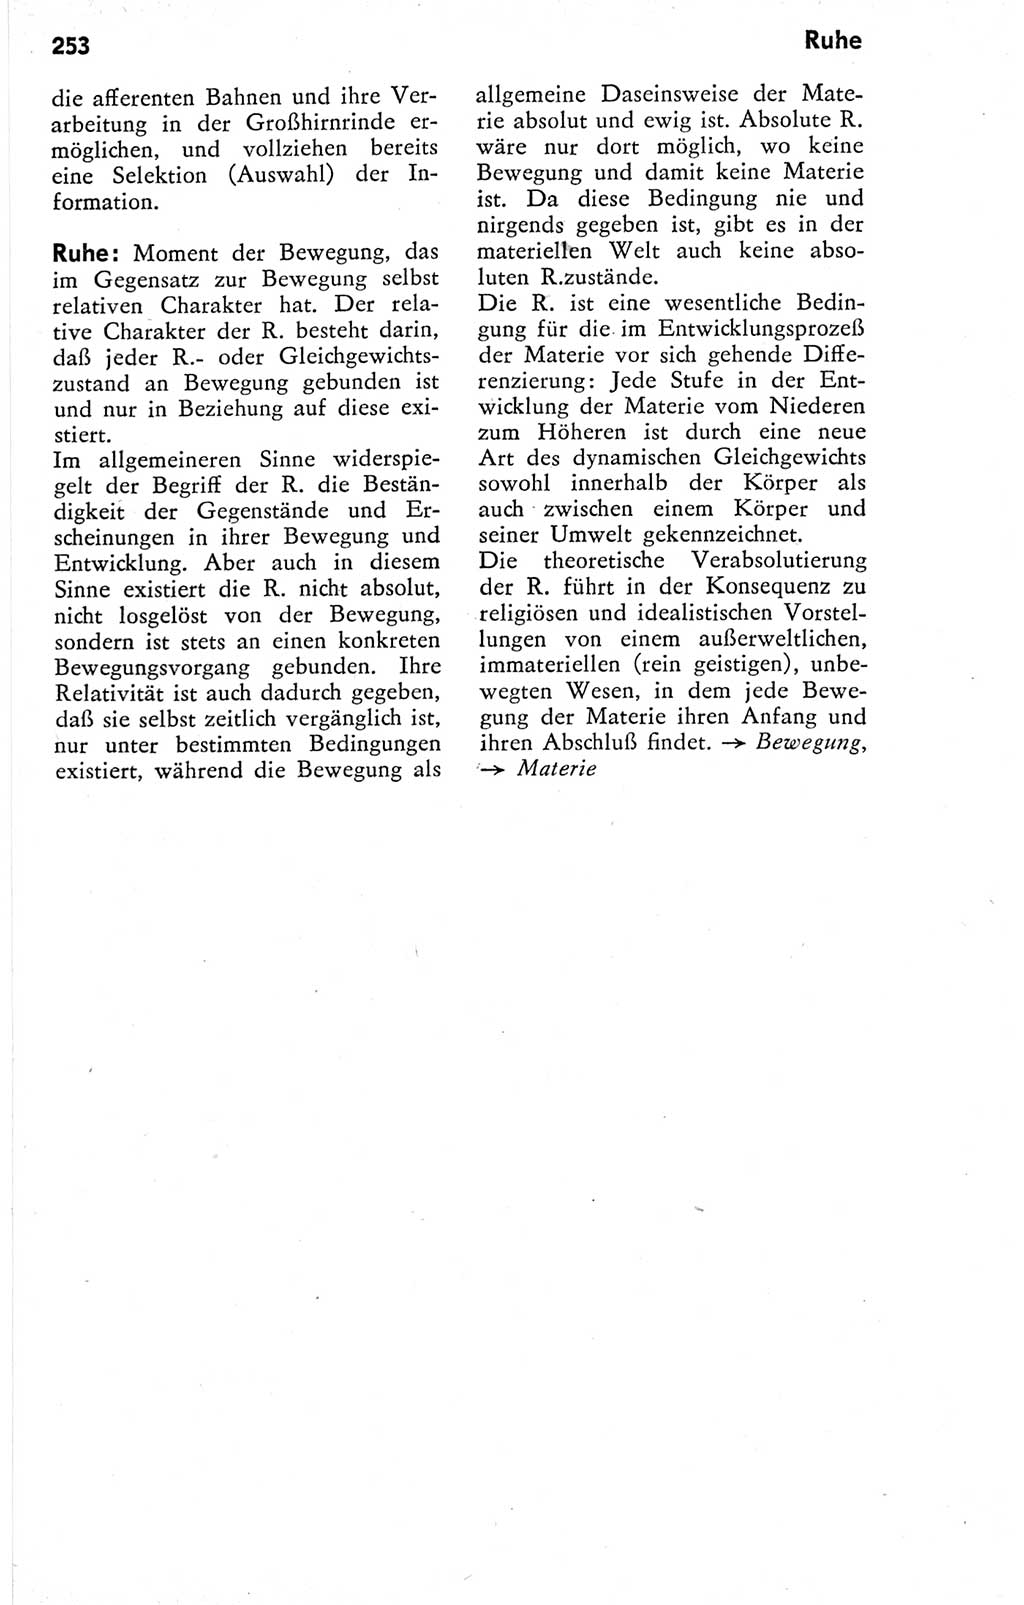 Kleines Wörterbuch der marxistisch-leninistischen Philosophie [Deutsche Demokratische Republik (DDR)] 1974, Seite 253 (Kl. Wb. ML Phil. DDR 1974, S. 253)